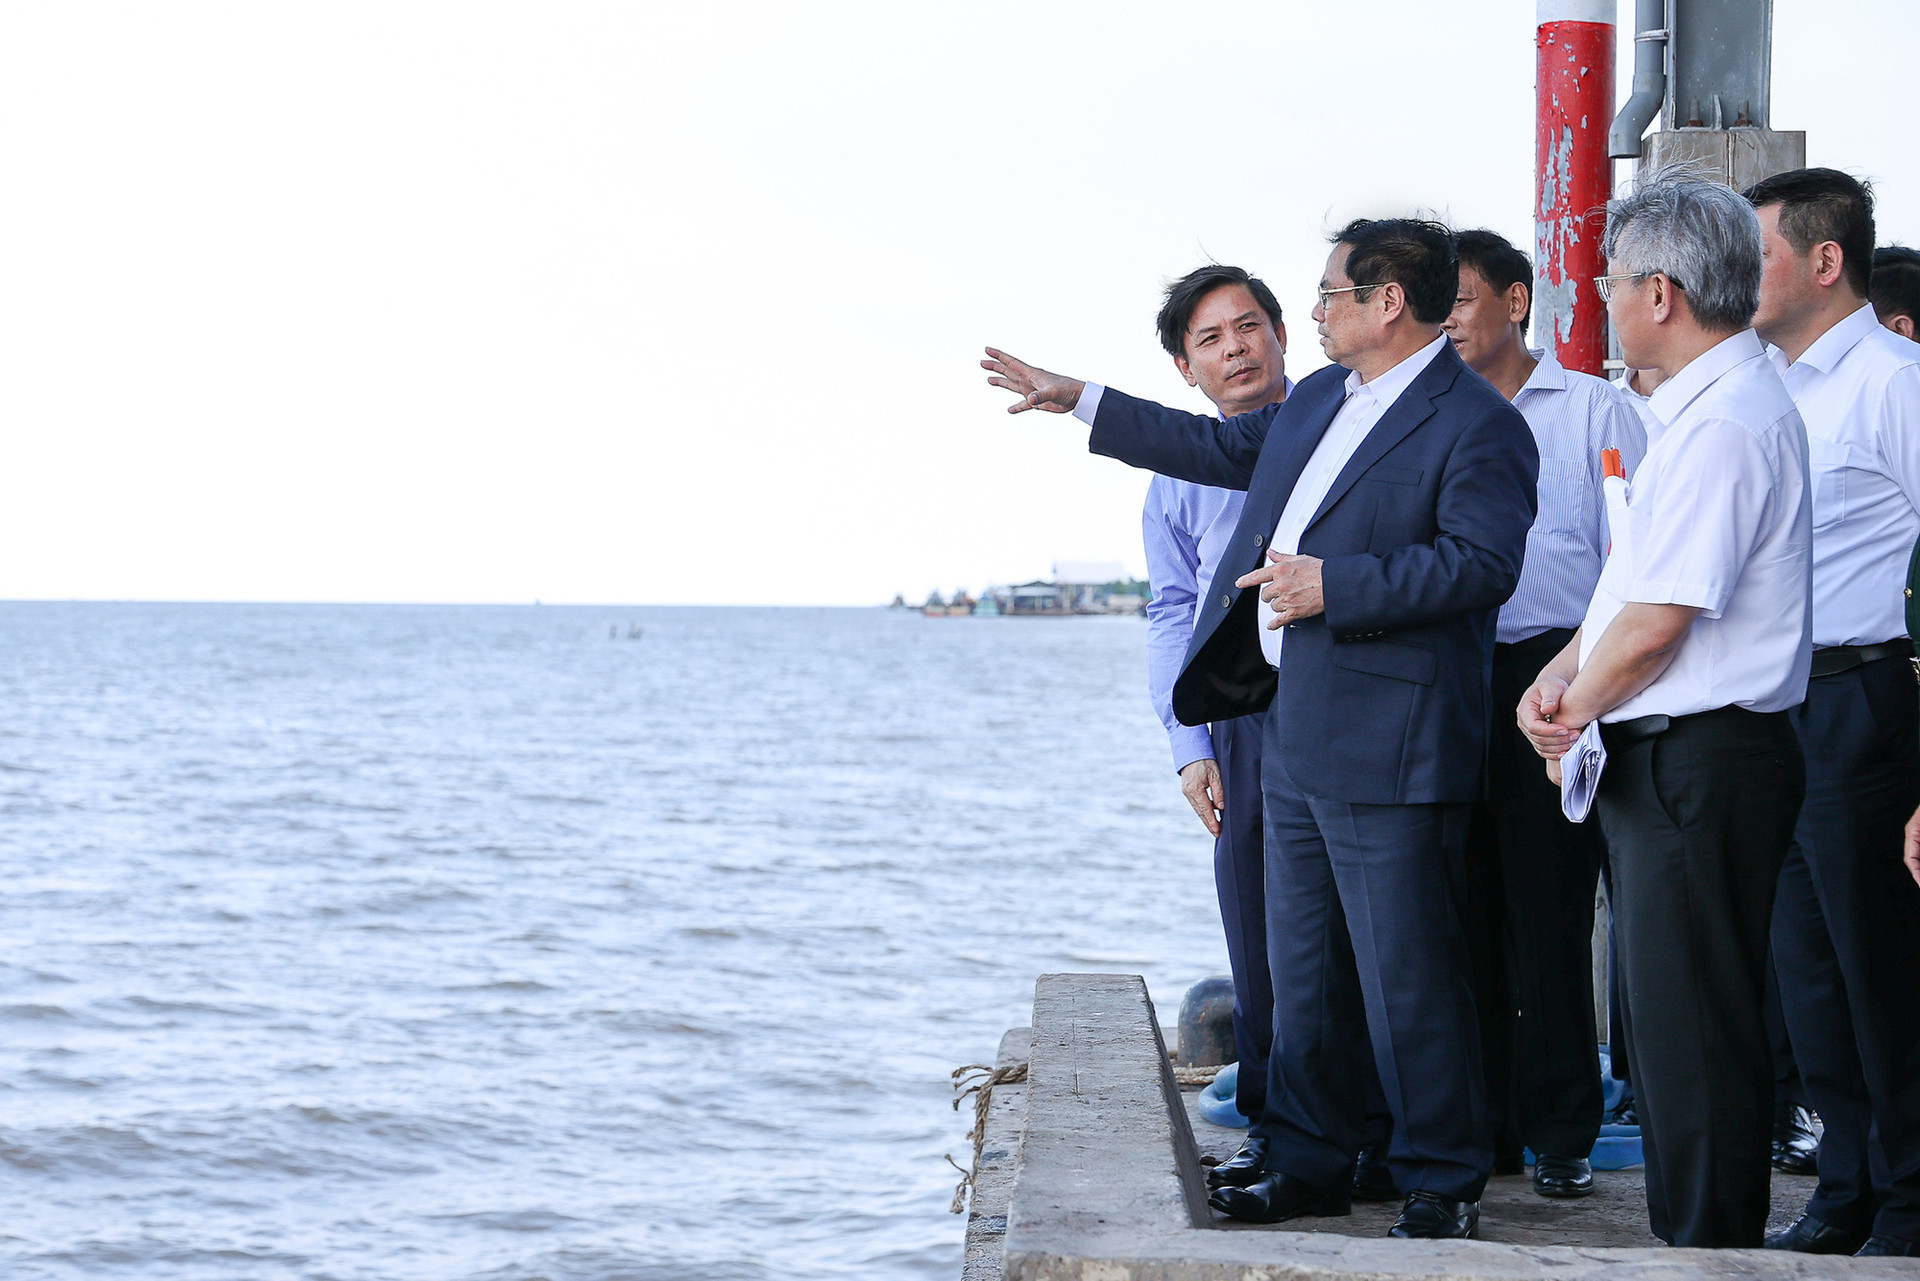 Thủ tướng khảo sát khu quy hoạch cảng lớn nhất ĐBSCL và dự án nhiệt điện Long Phú 1 - Ảnh 4.